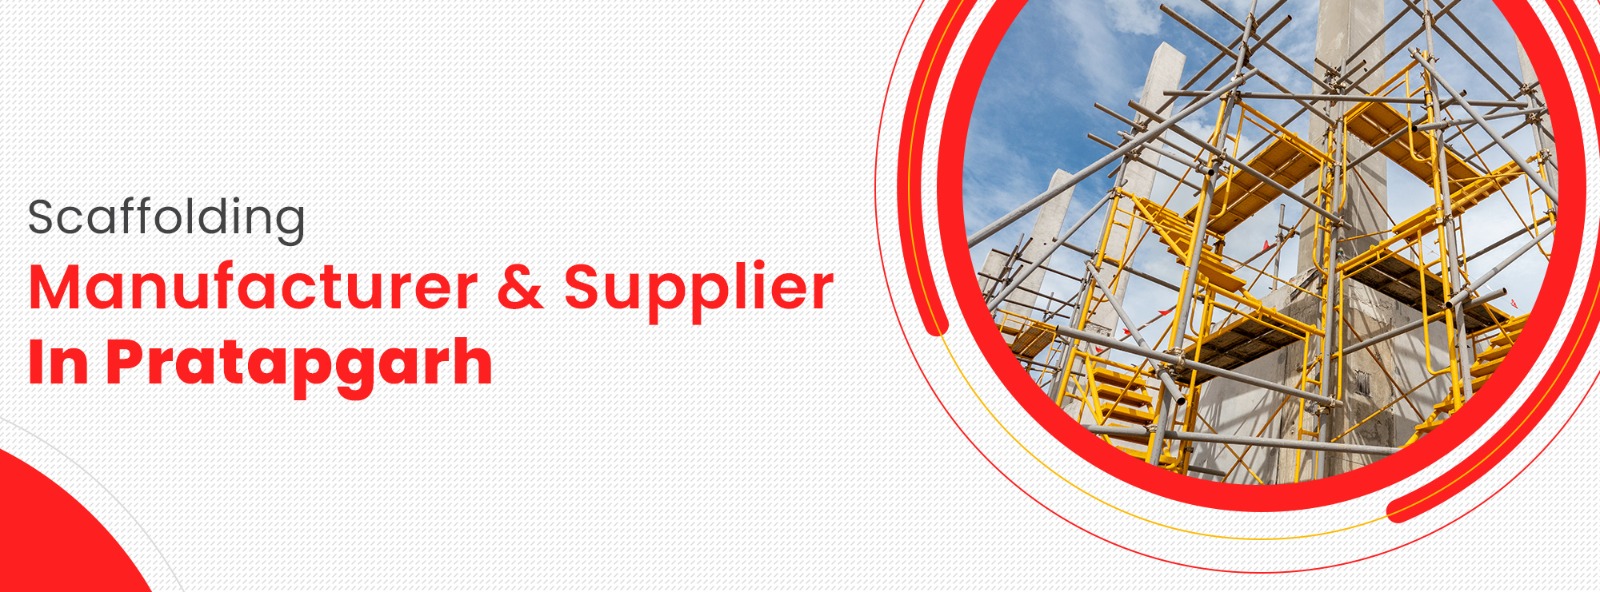 Scaffolding Mnaufacturer & Supplier In Pratapgarh